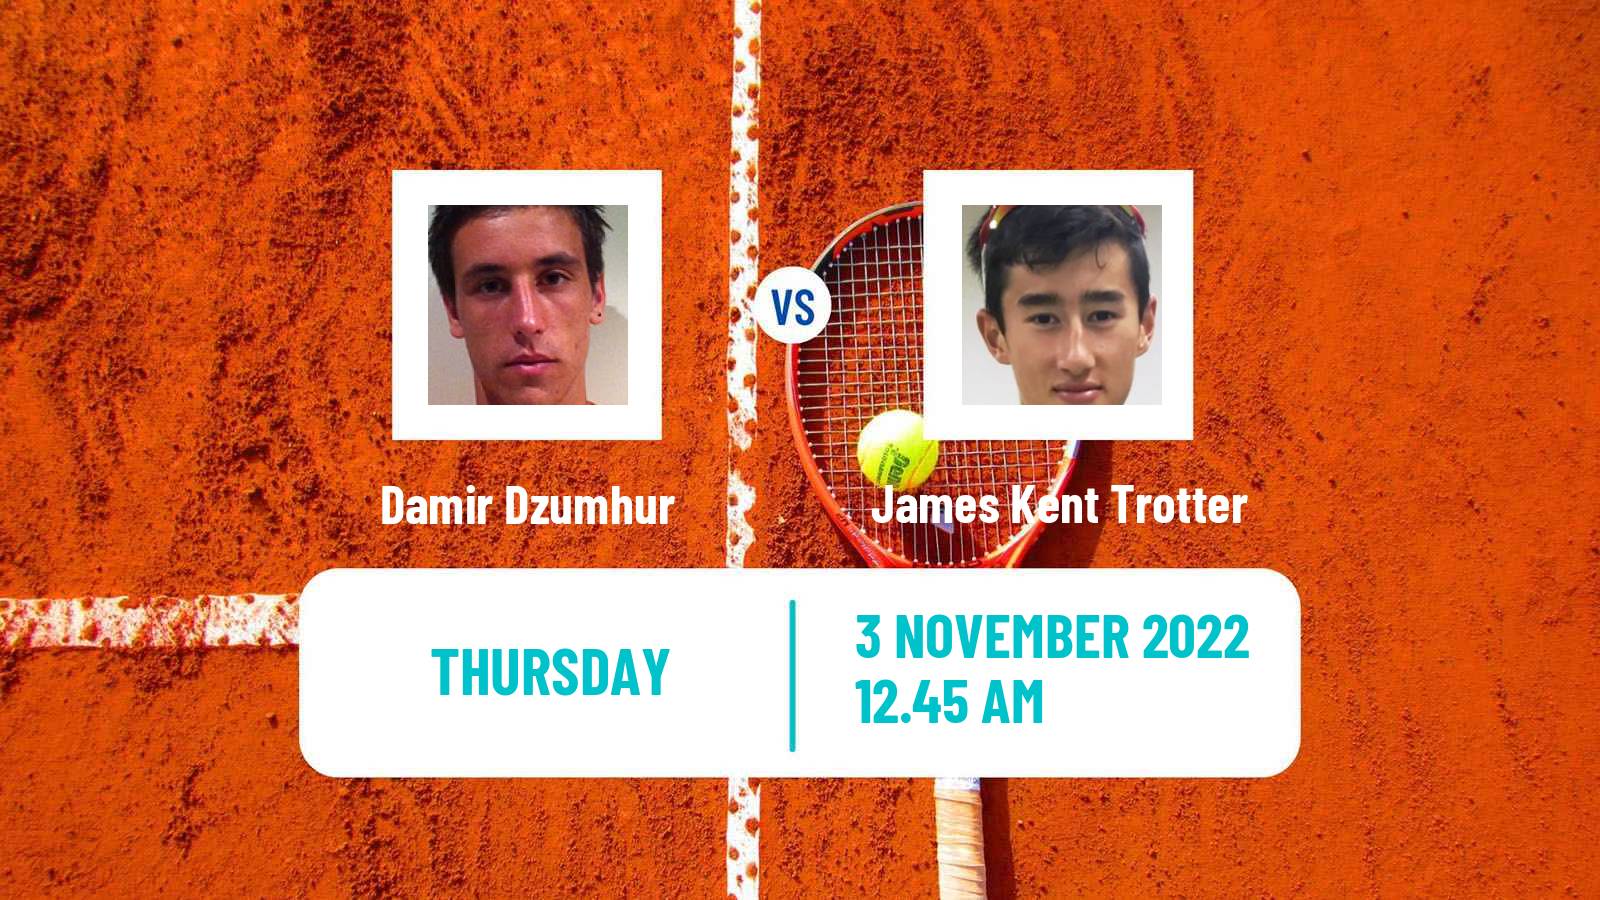 Tennis ATP Challenger Damir Dzumhur - James Kent Trotter